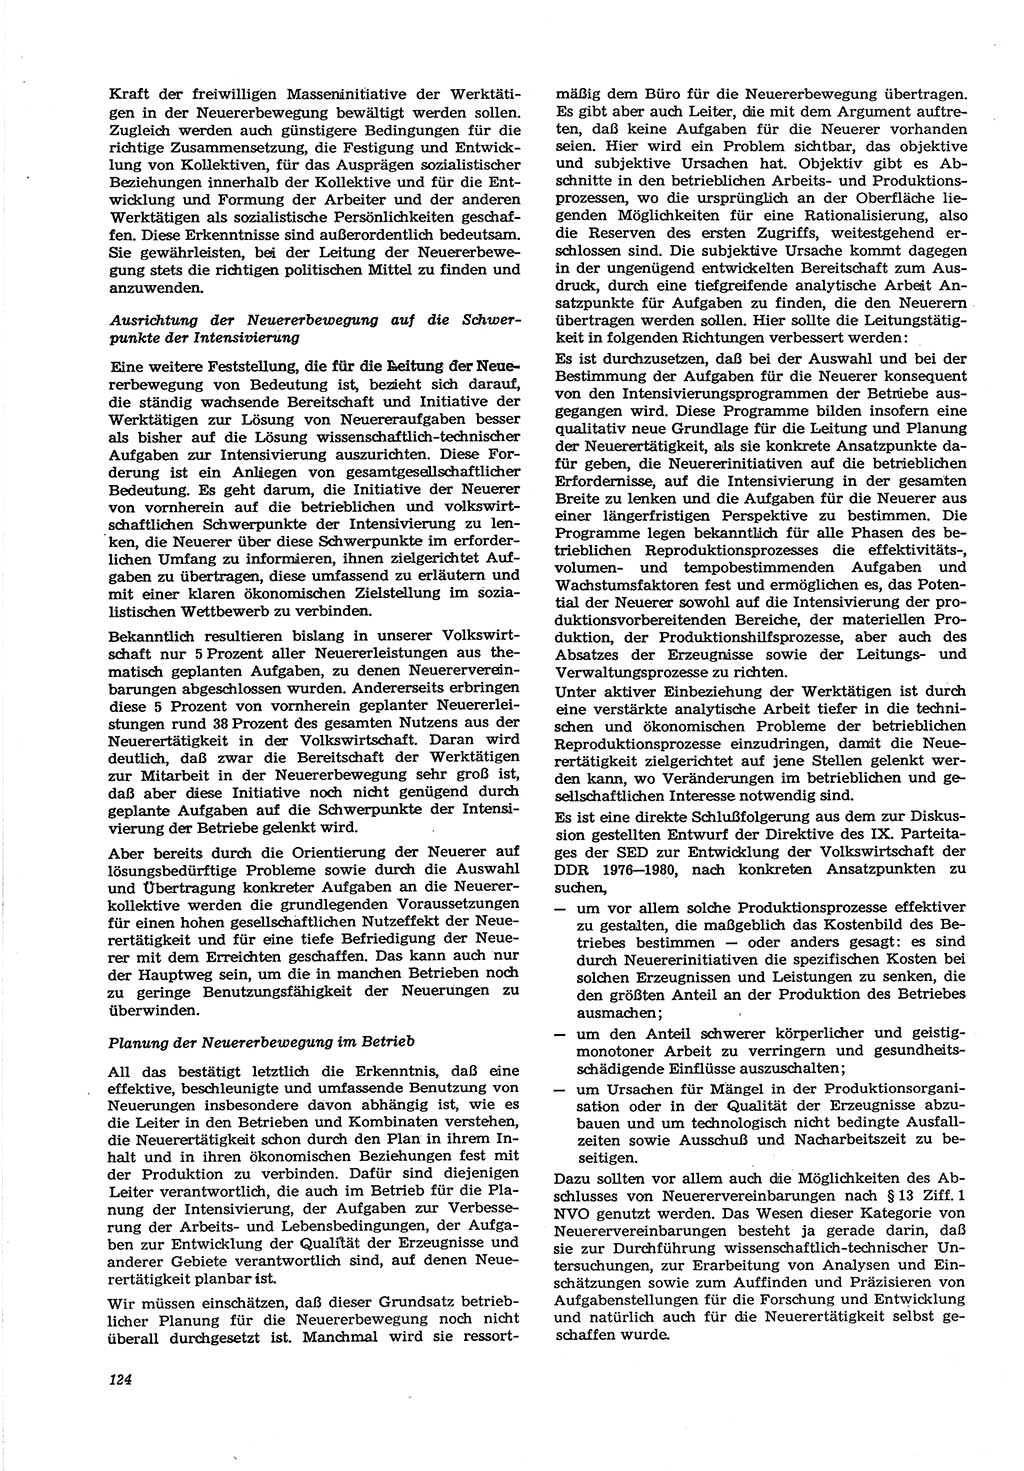 Neue Justiz (NJ), Zeitschrift für Recht und Rechtswissenschaft [Deutsche Demokratische Republik (DDR)], 30. Jahrgang 1976, Seite 124 (NJ DDR 1976, S. 124)